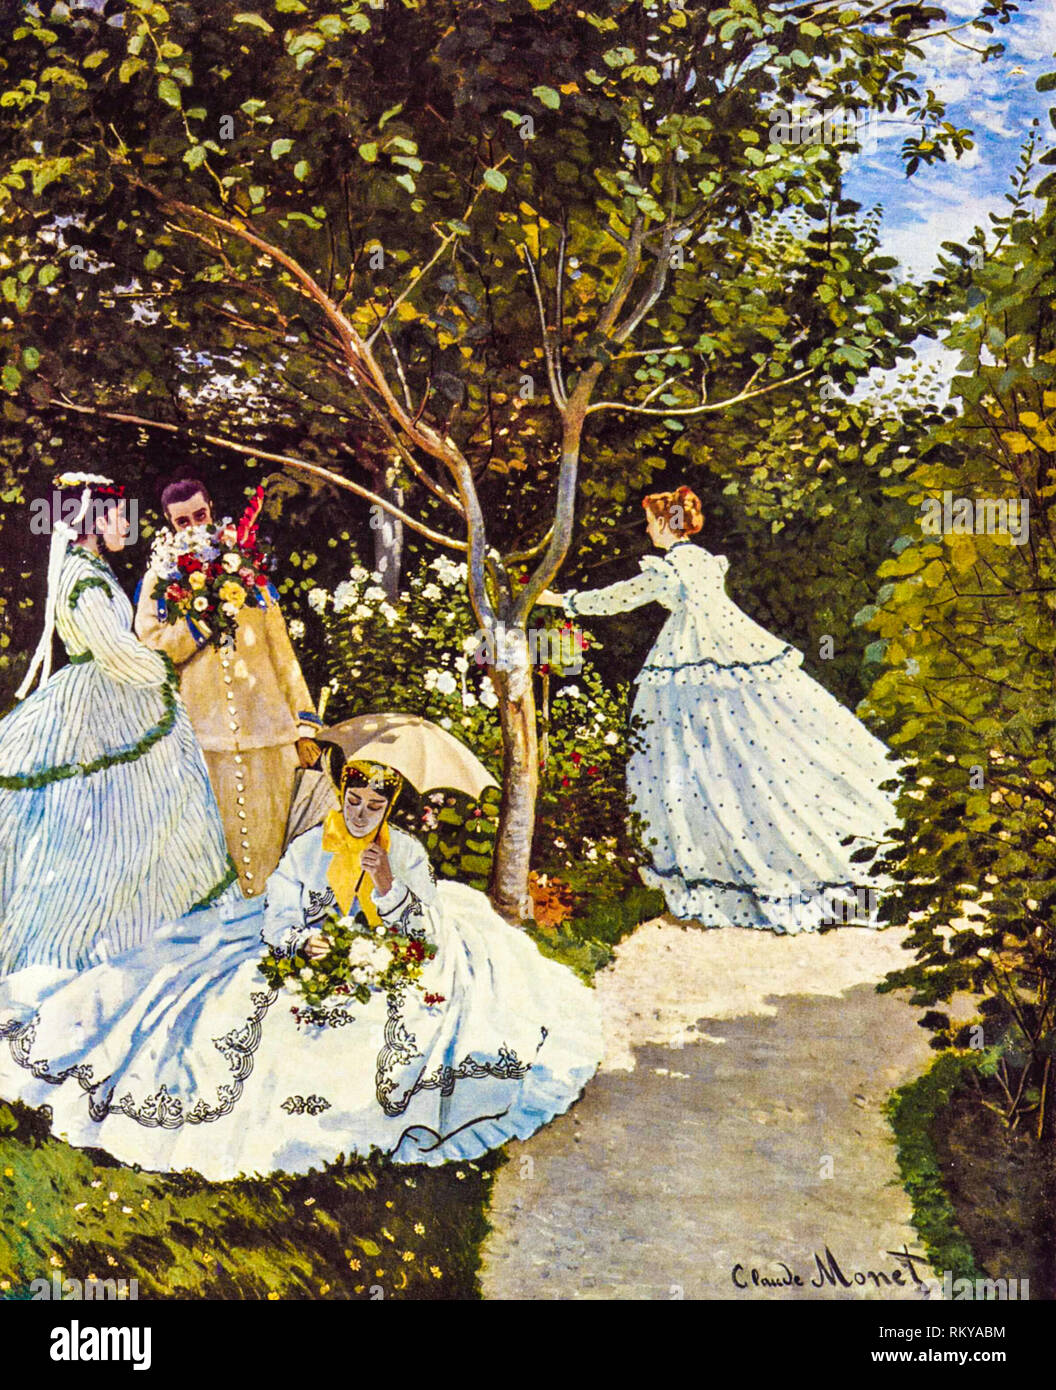 Femmes dans le jardin par Claude Monet, peinture impressionniste, 1866 Banque D'Images